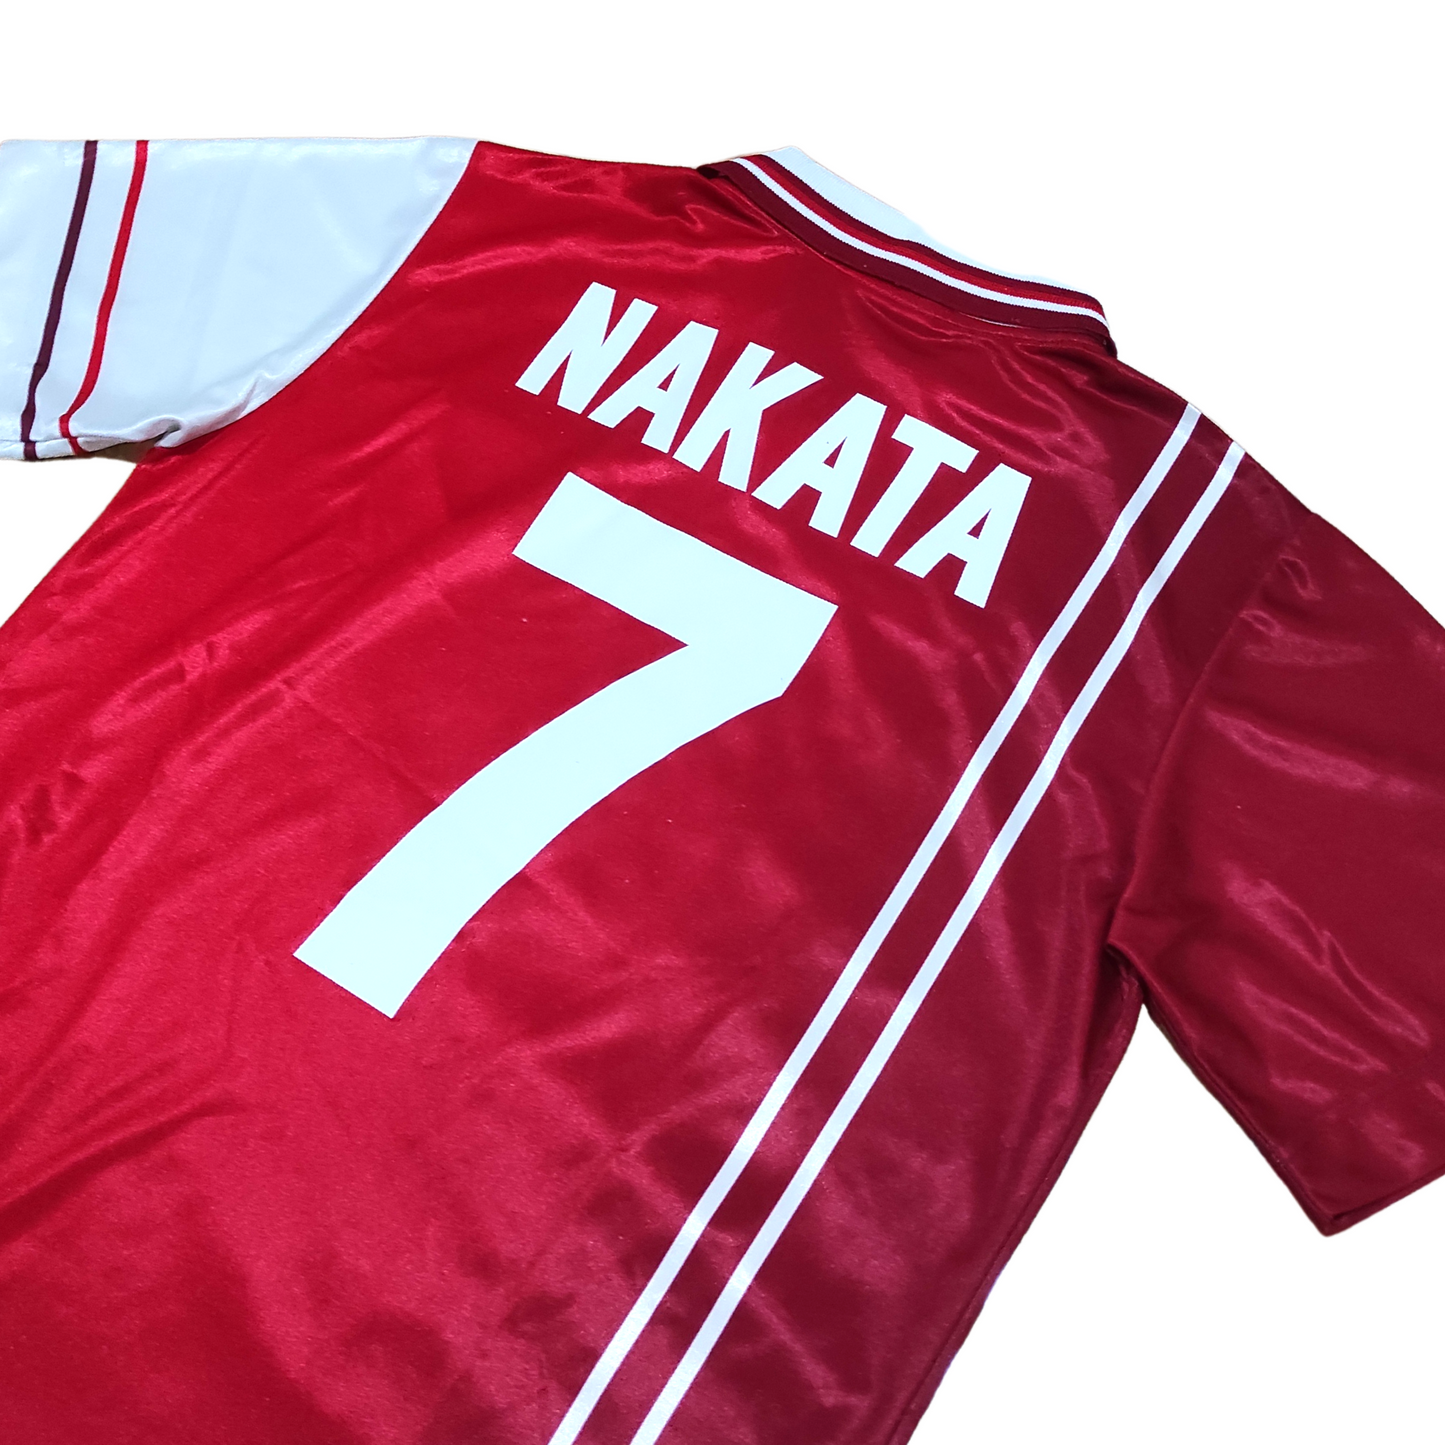 Perugia Home Shirt 1998-1999 Nakata (M)